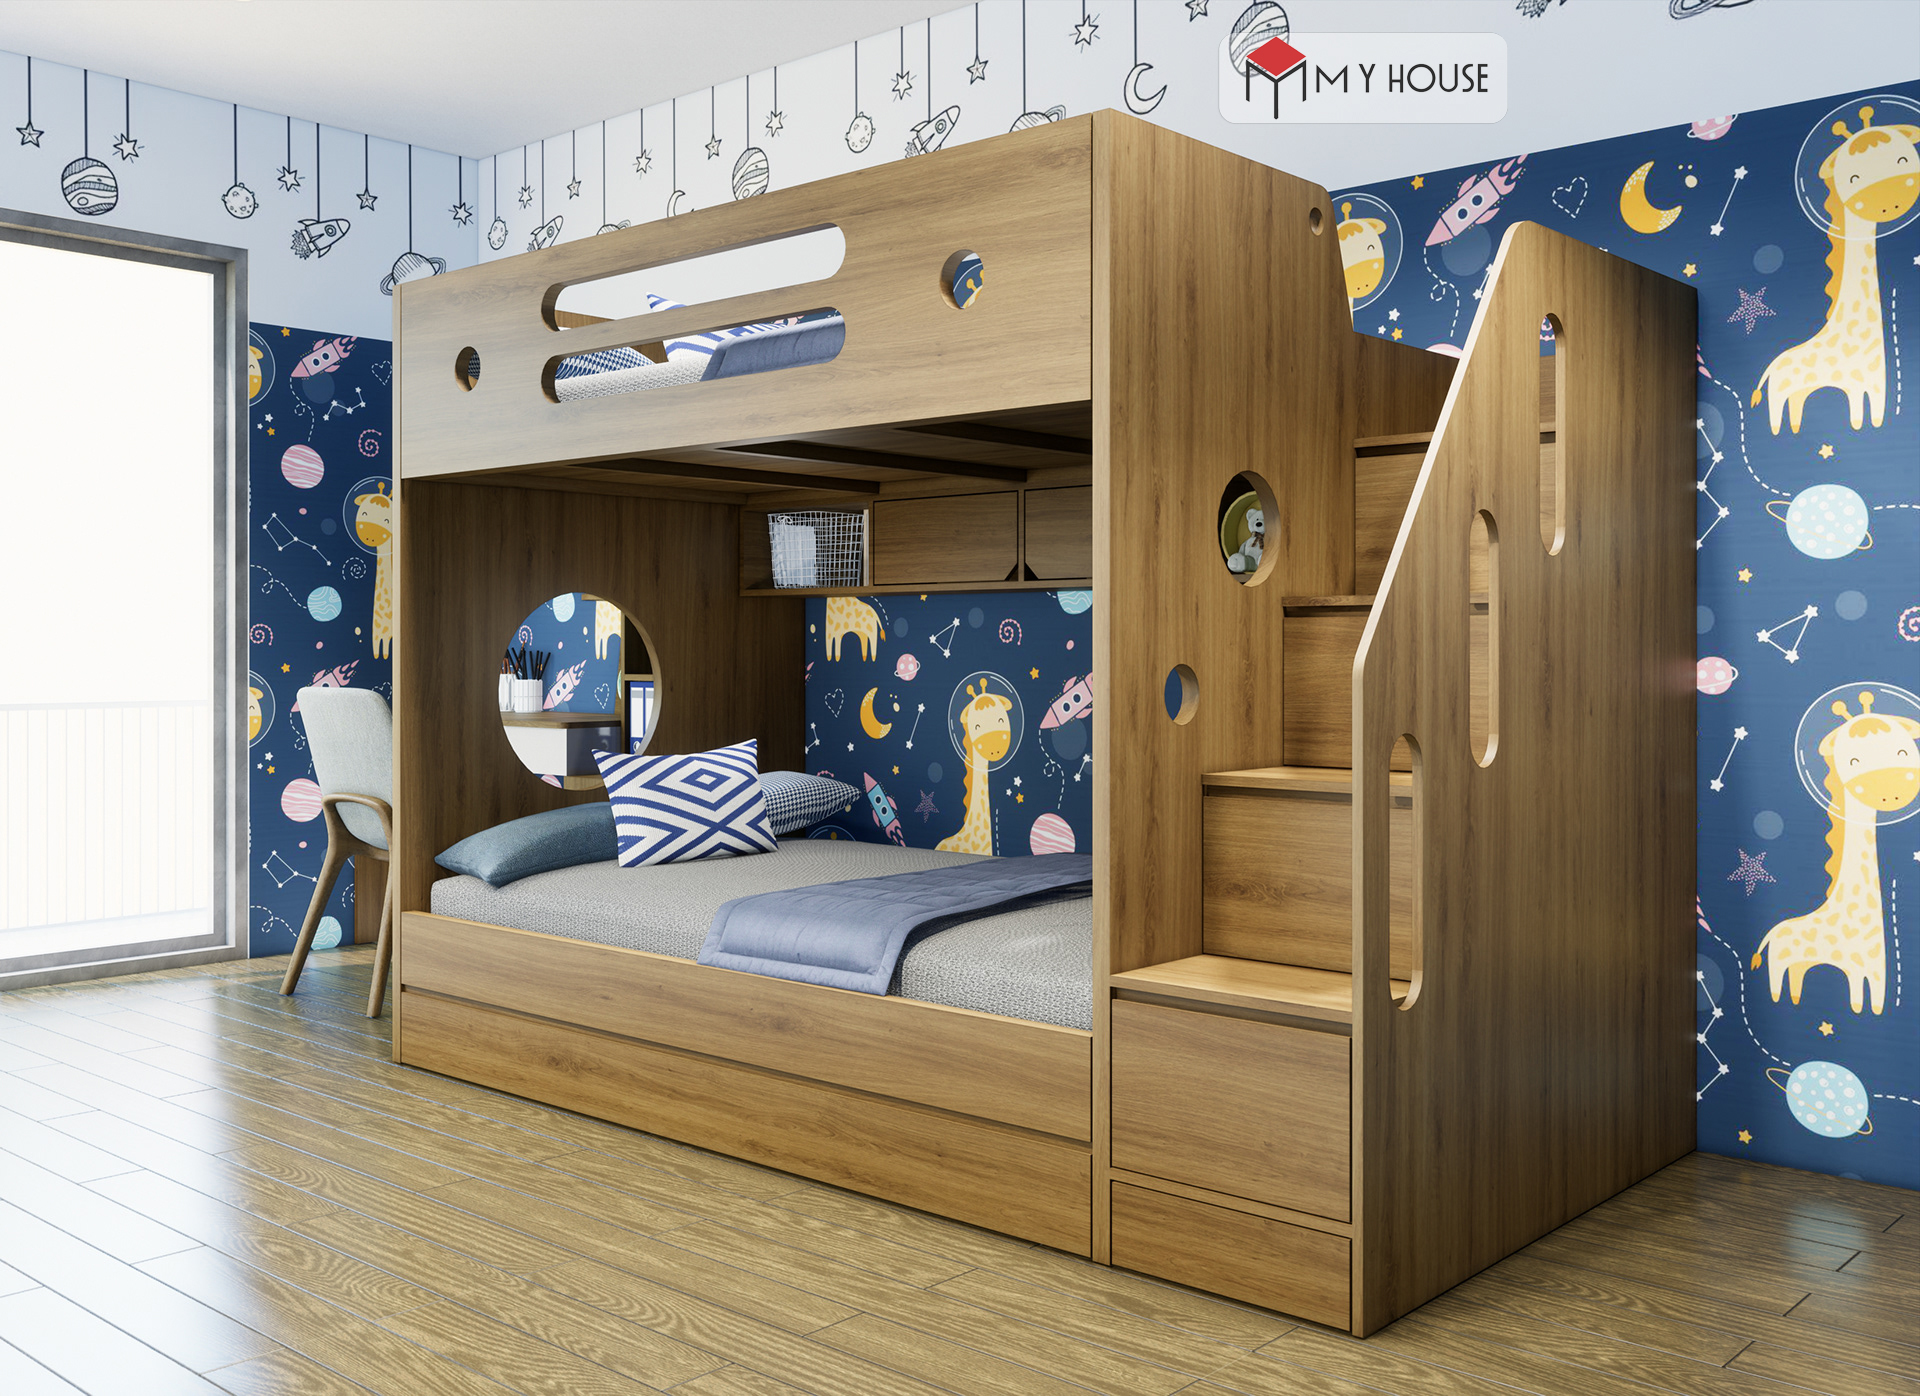 thiết kế giường tầng cho phòng nhỏ 5